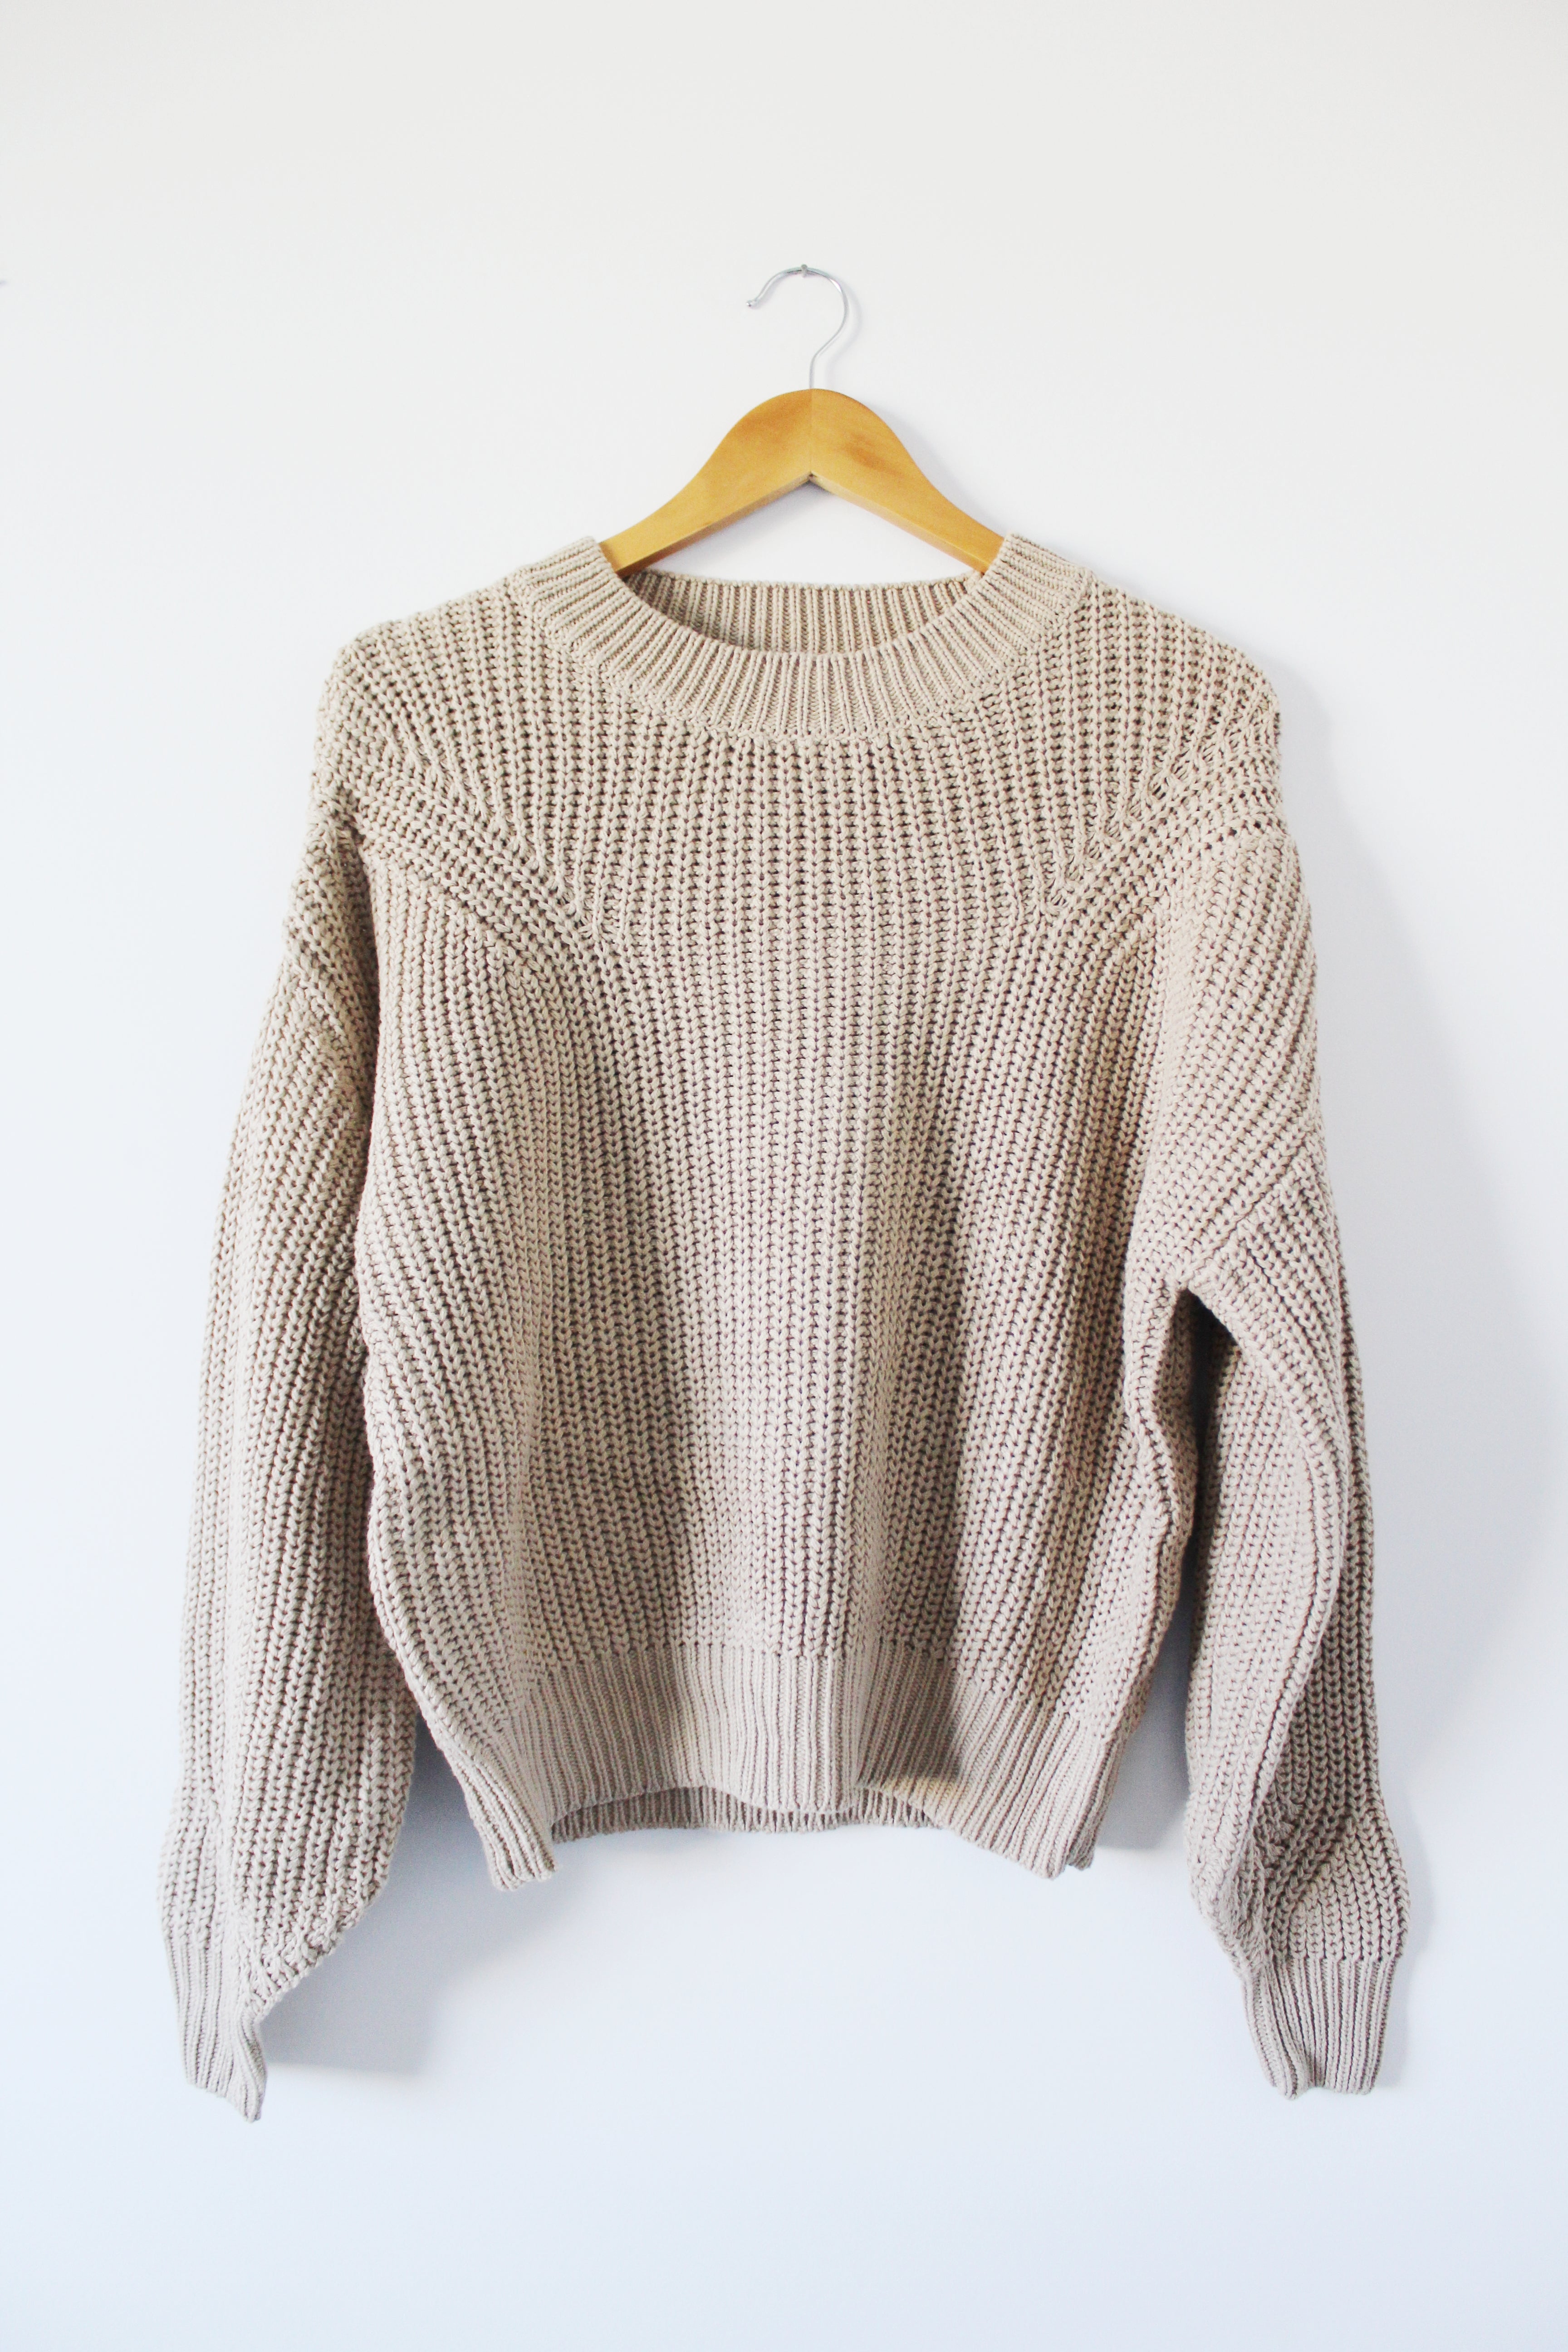 Oak knit sweater